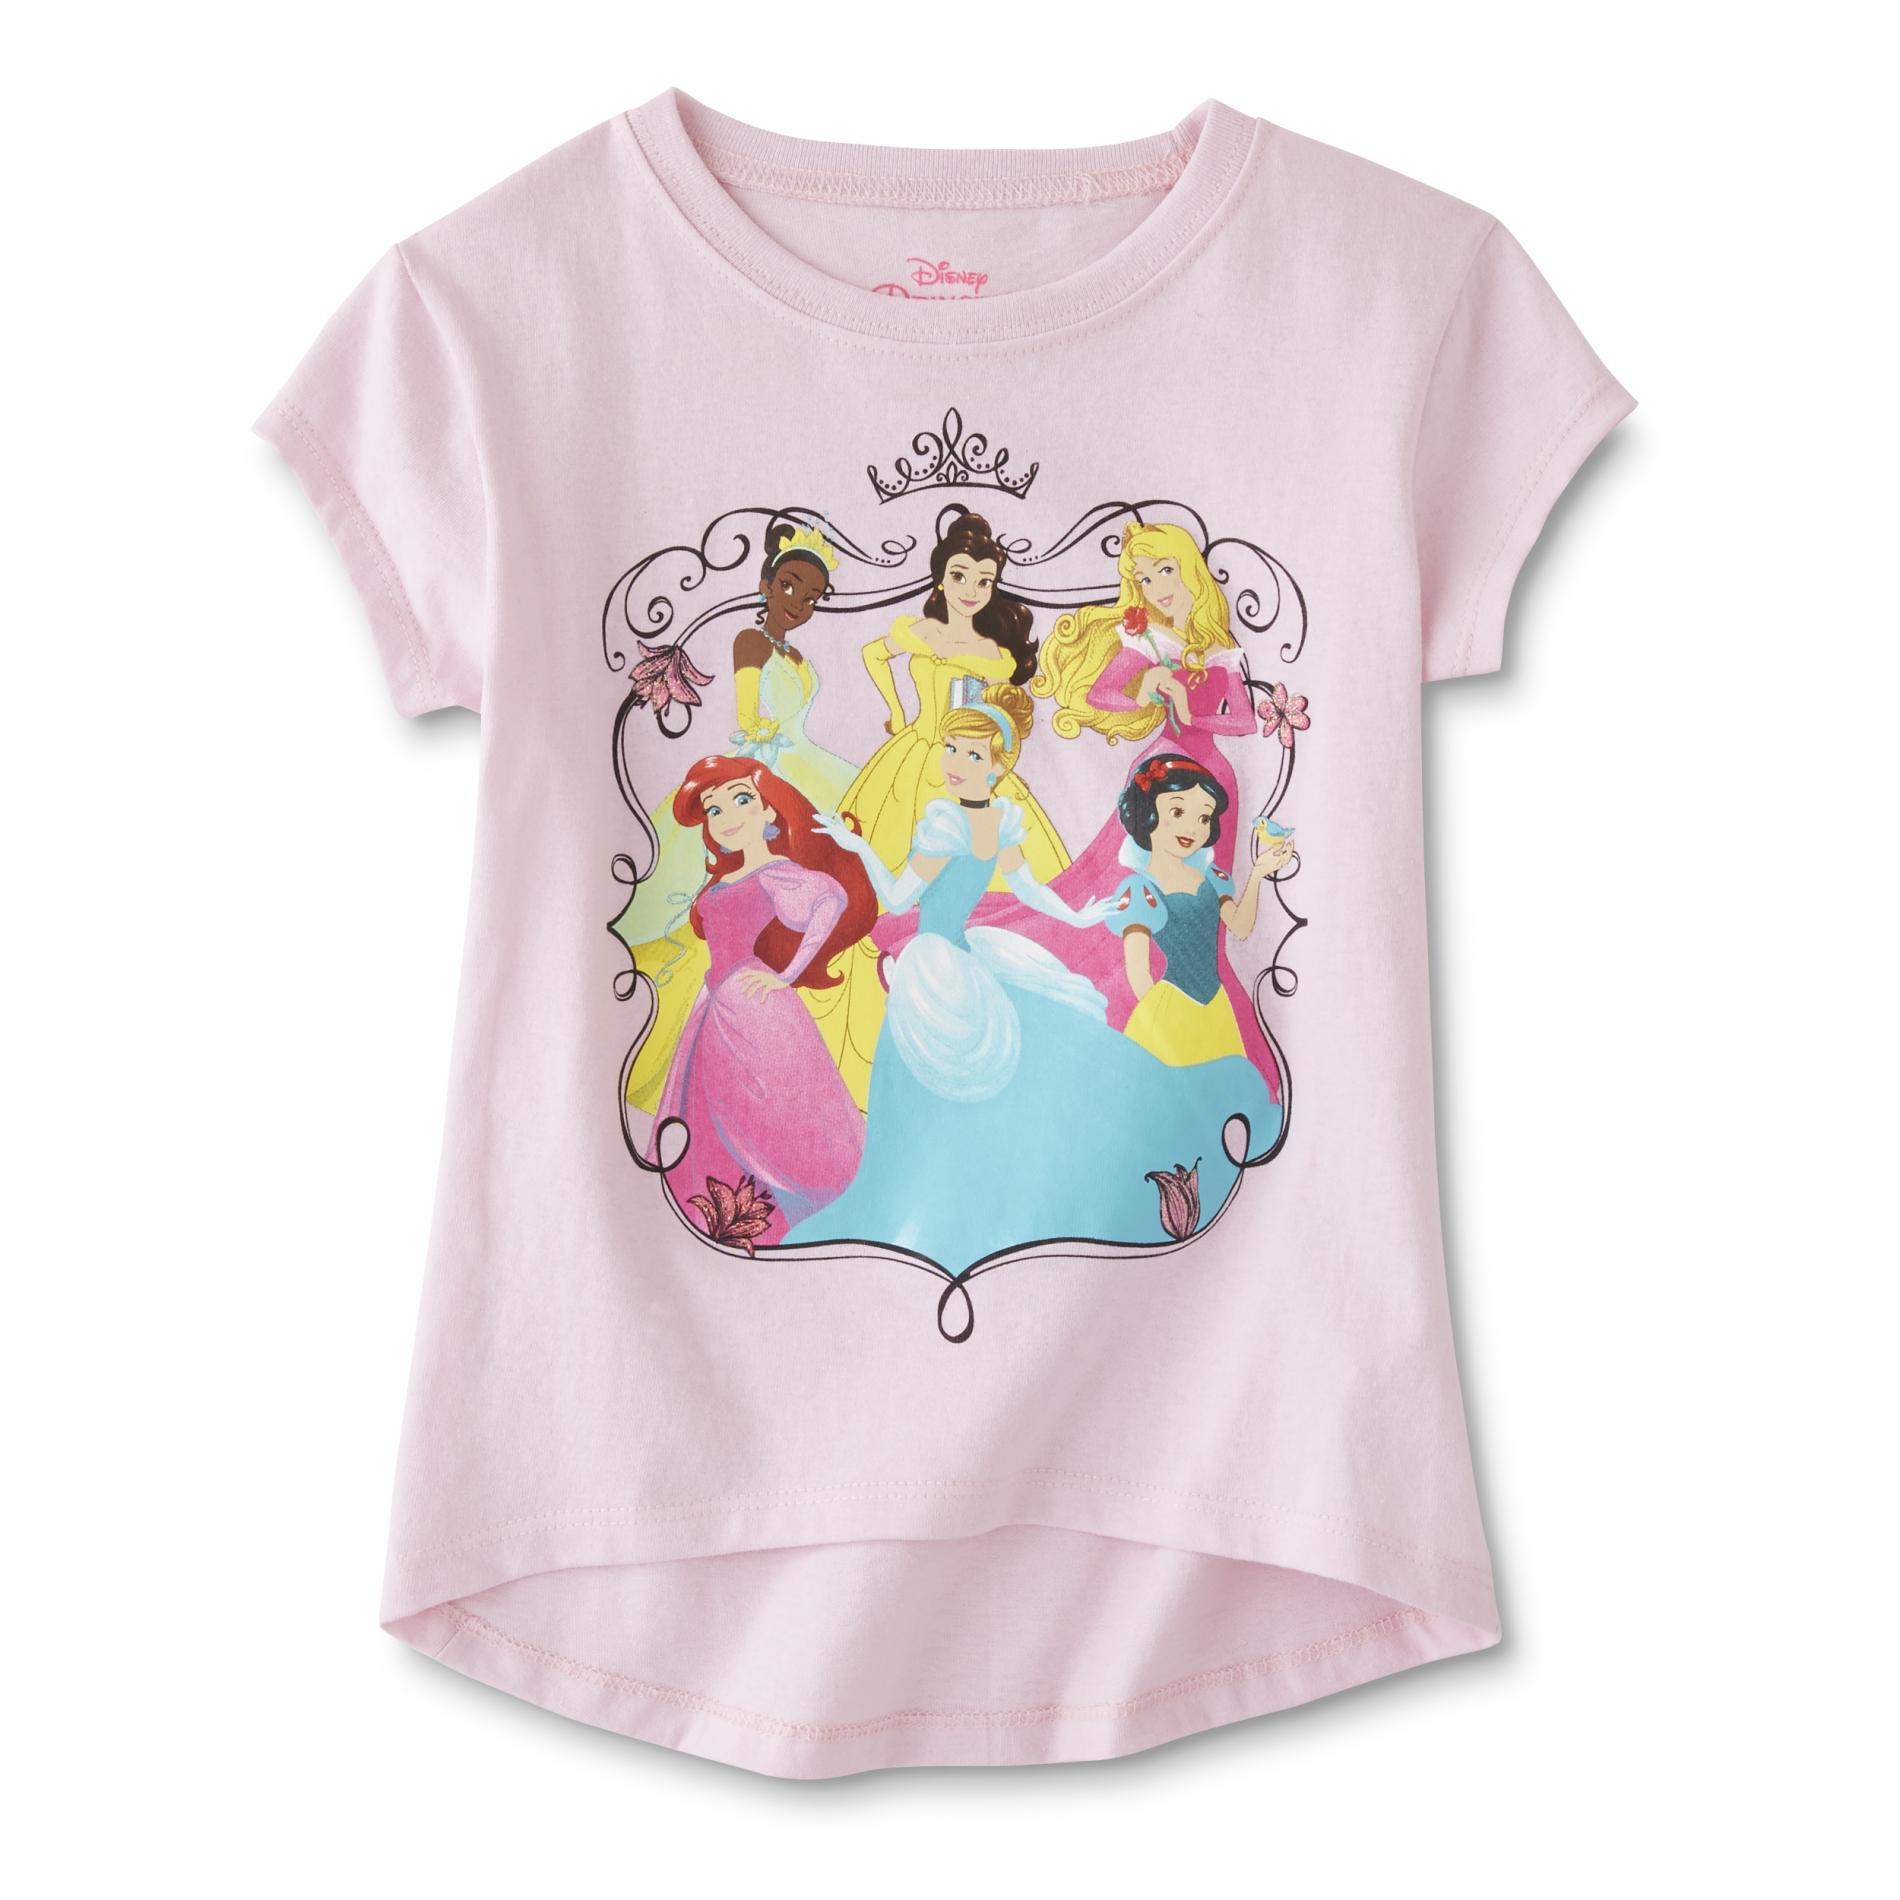 Disney Graphic TShirt Princess